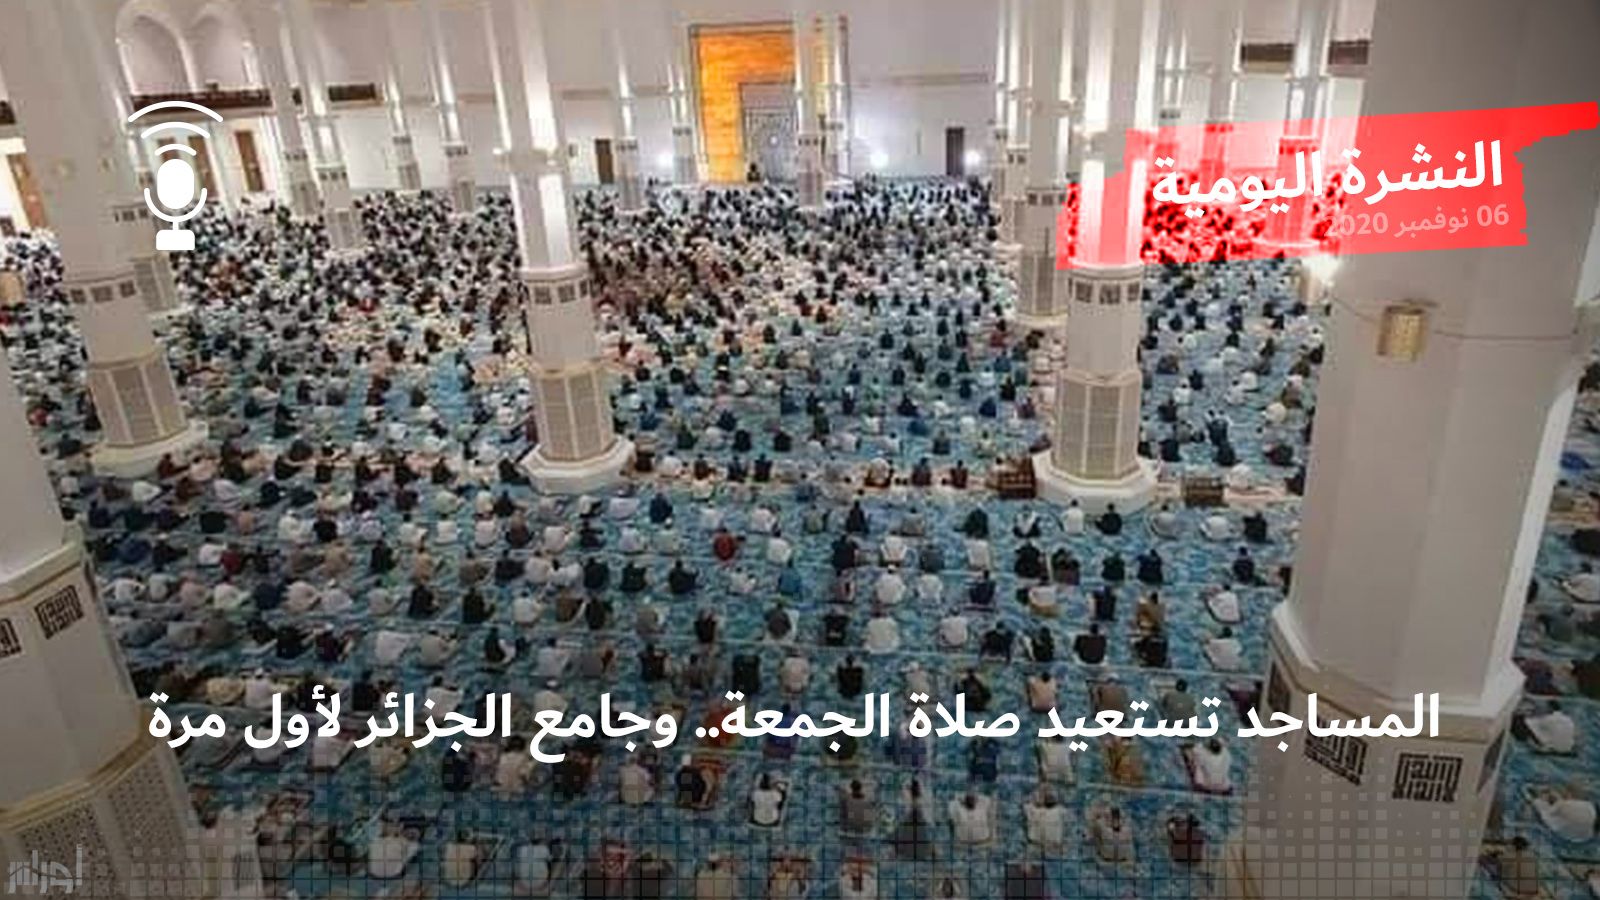 النشرة اليومية: المساجد تستعيد صلاة الجمعة.. وجامع الجزائر لأول مرة